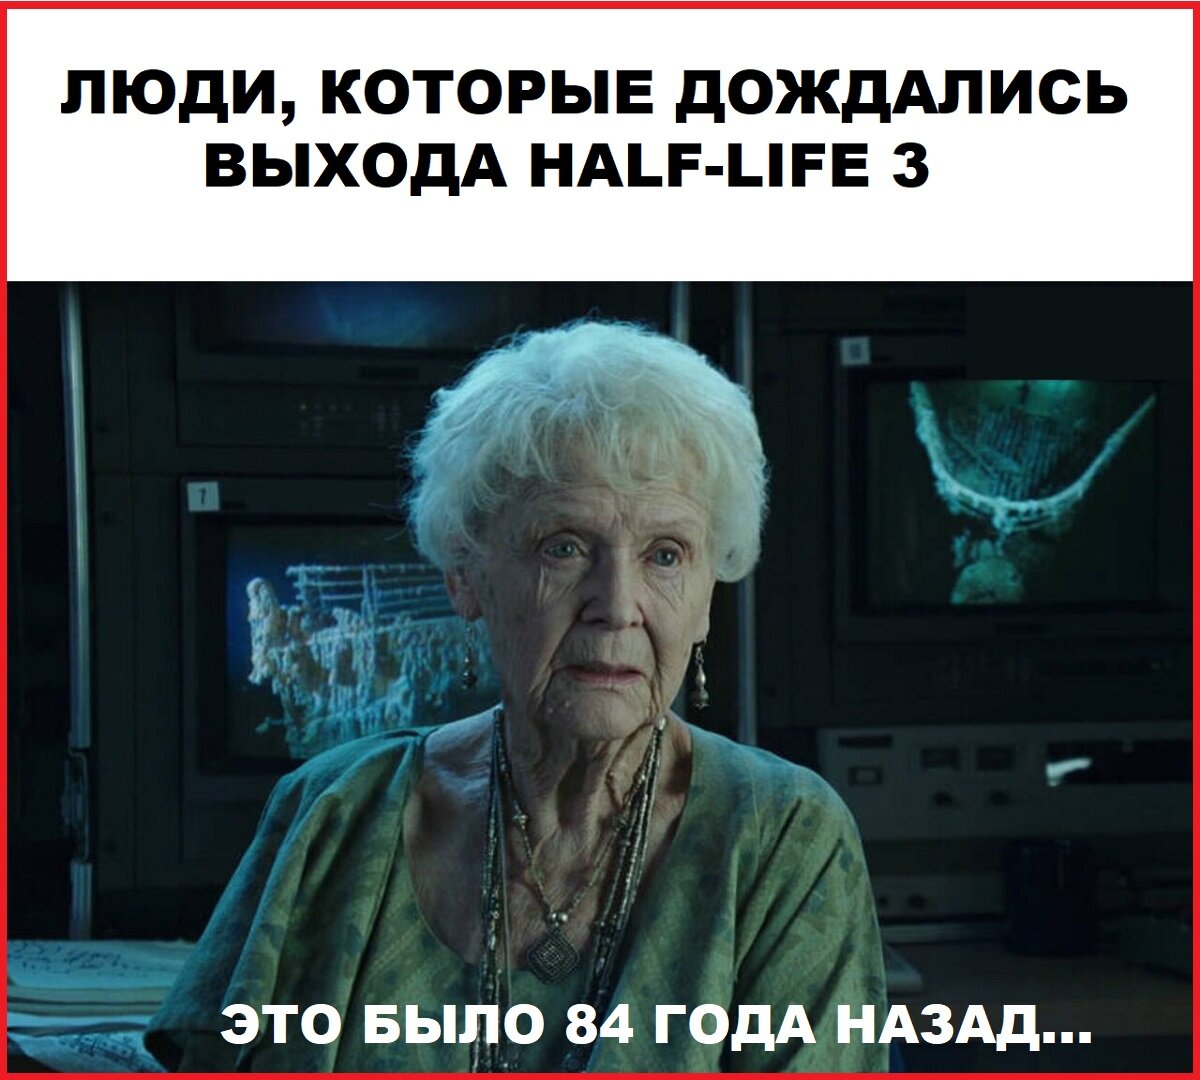 Посвящается Half-Life 3